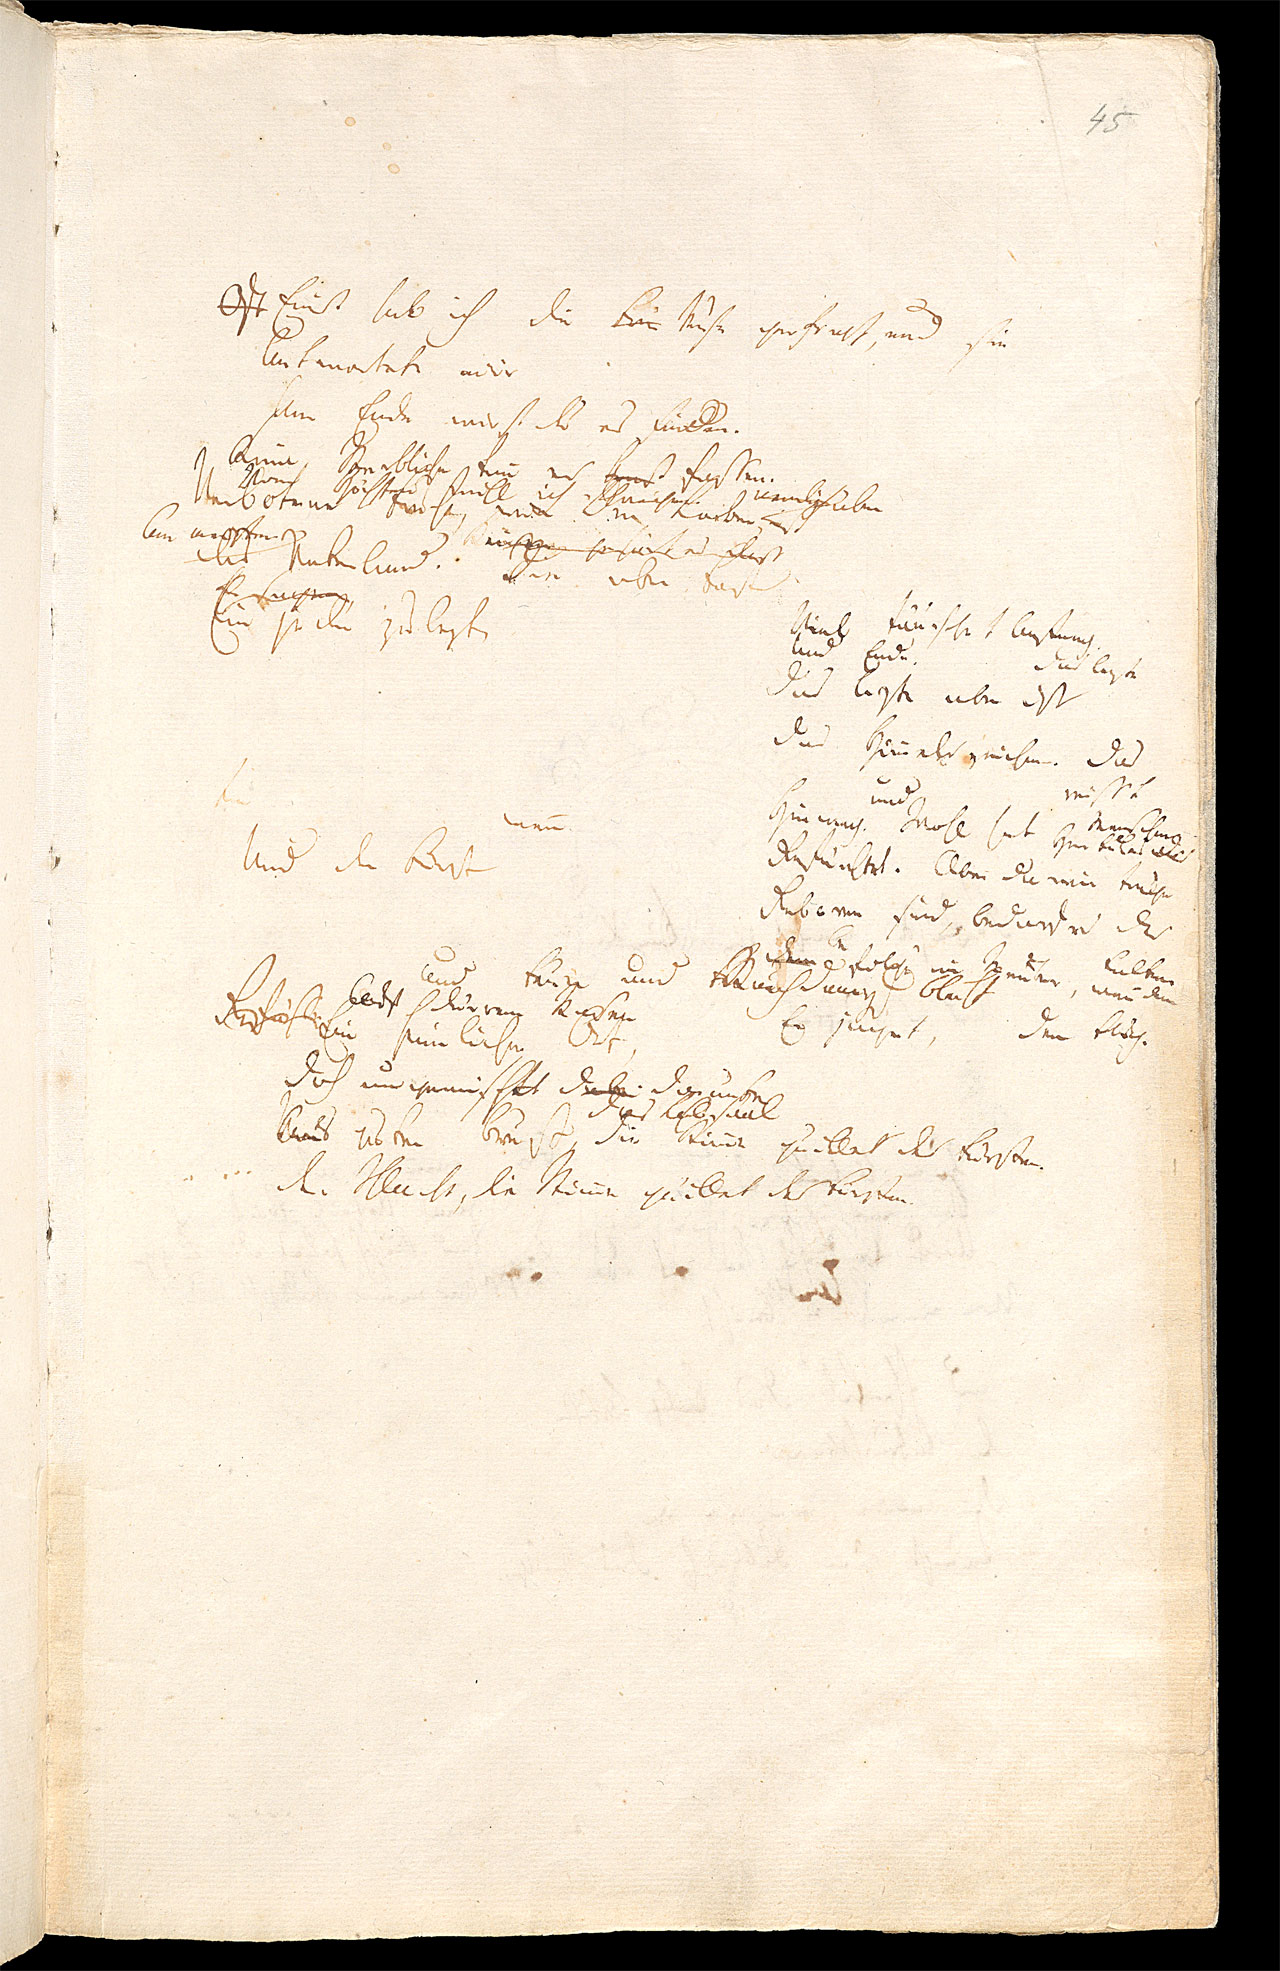 Friedrich Hölderlin, Homburger Folioheft, Seite 45, Einst hab ich die Muse gefragt…, Handschrift